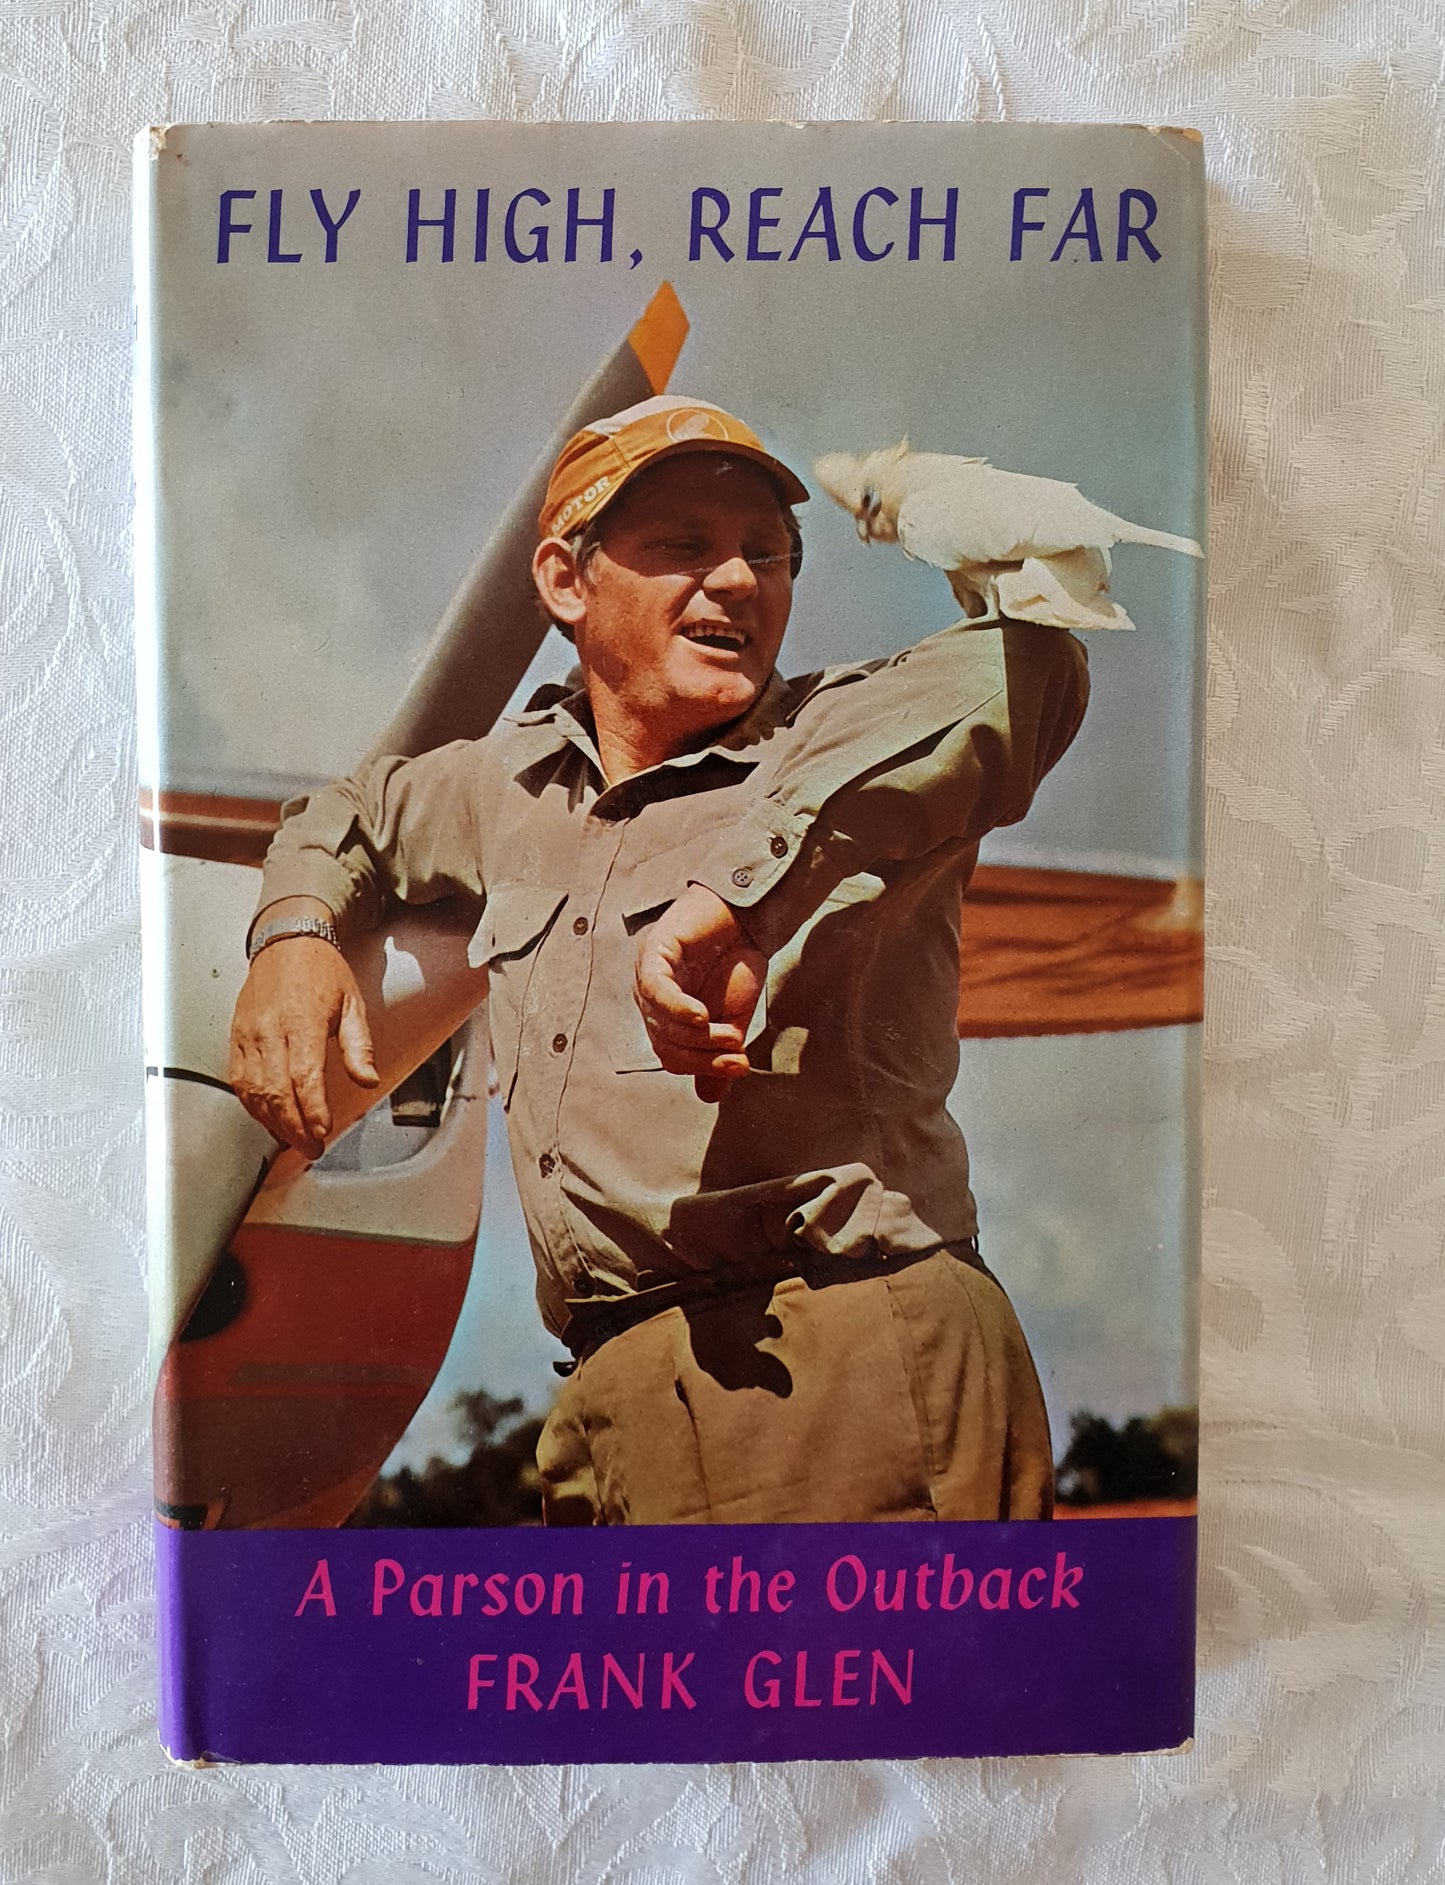 Fly High, Reach Far by Frank Glen